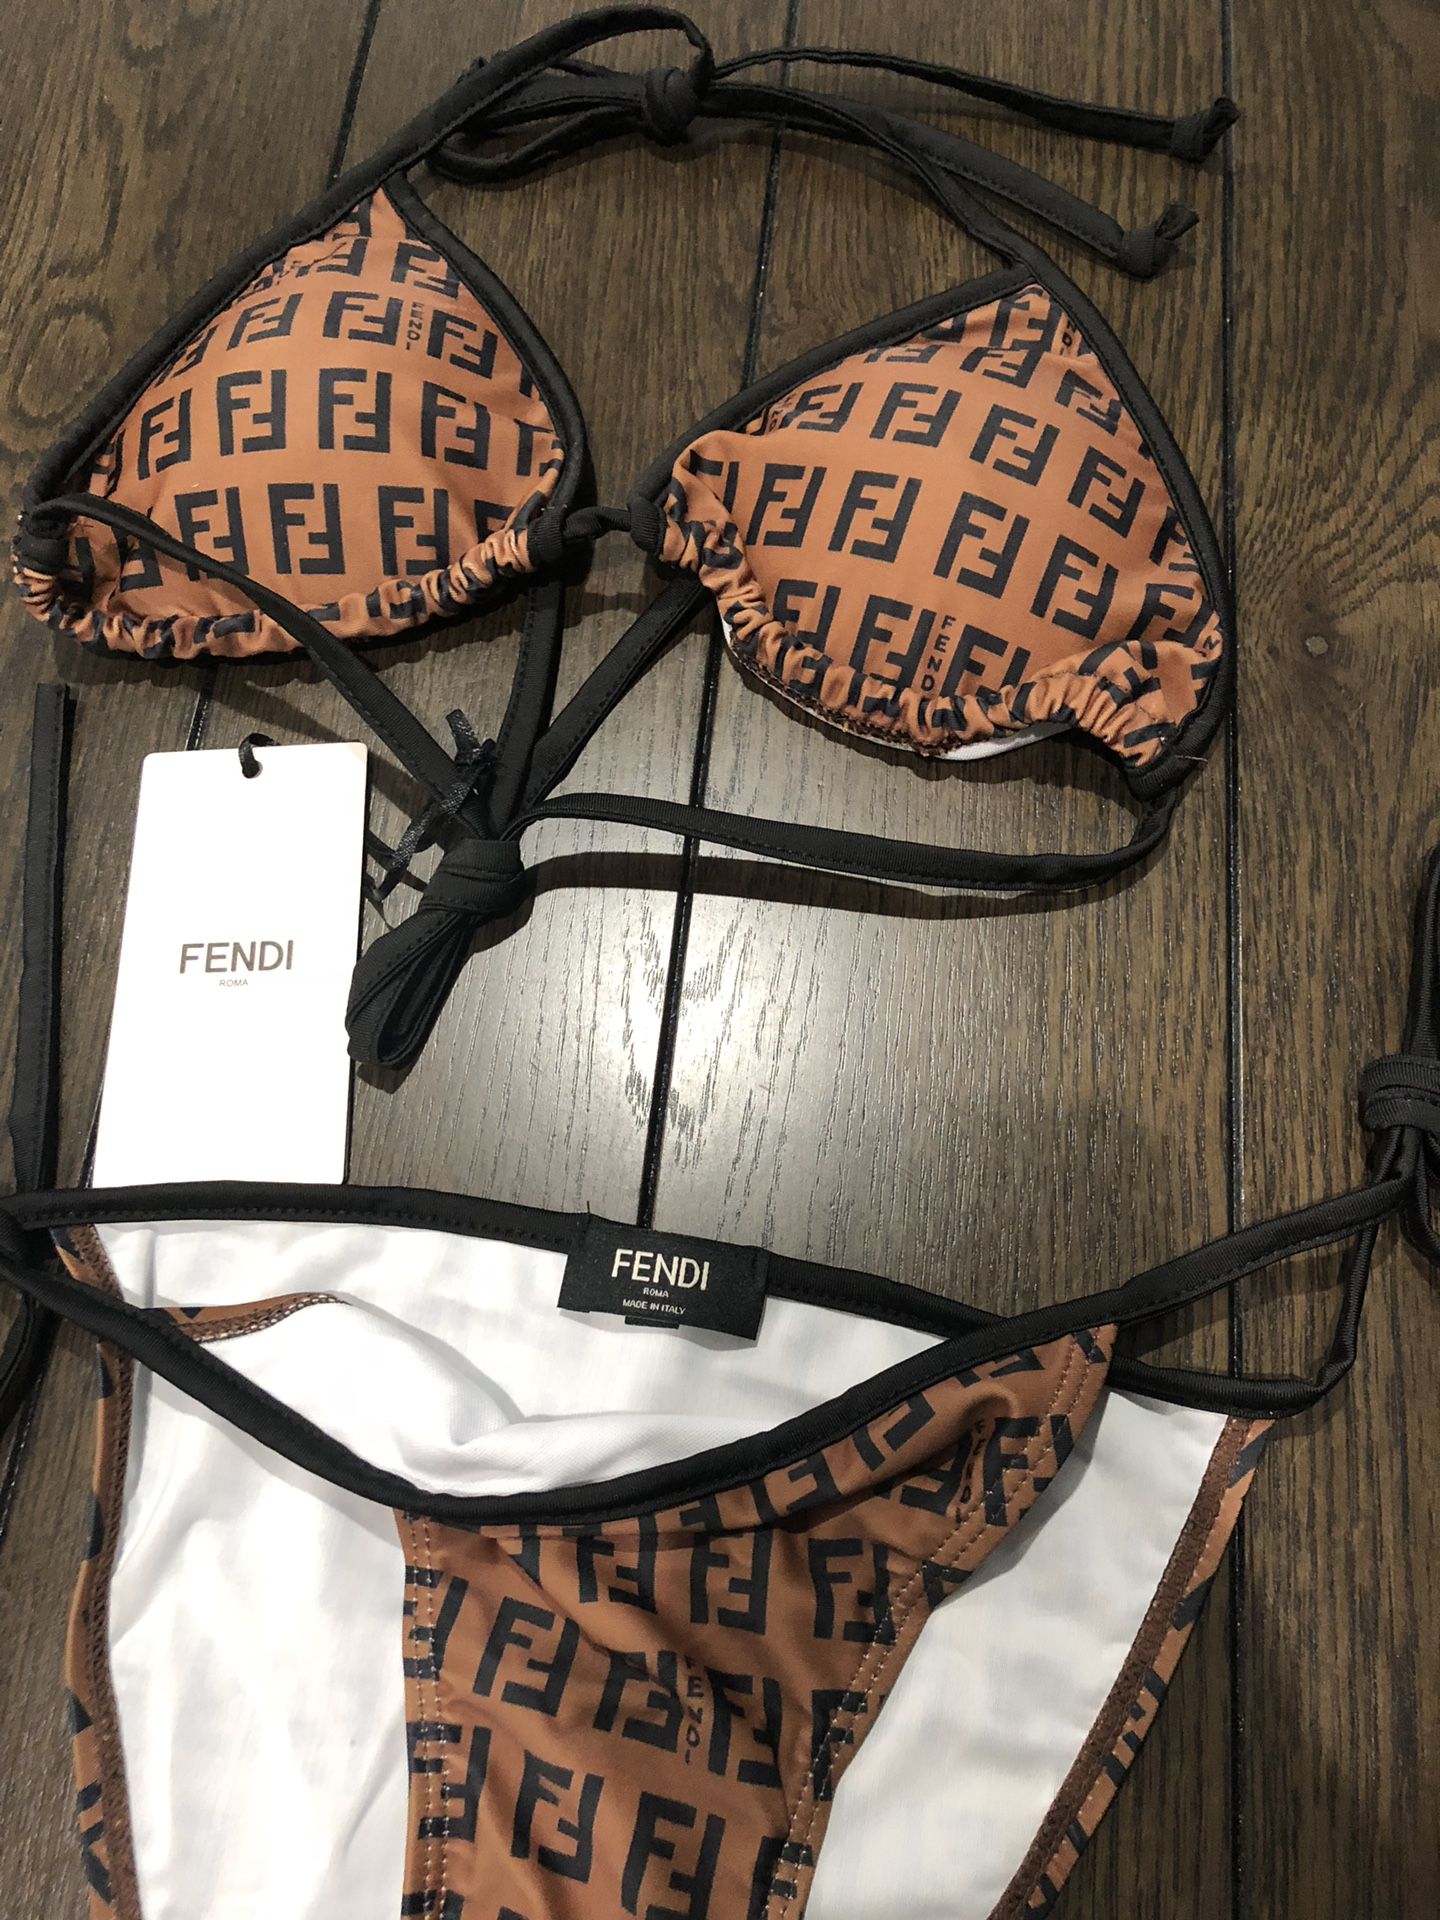 Fendi swim suit - size medium for Sale in Atlanta, GA - OfferUp